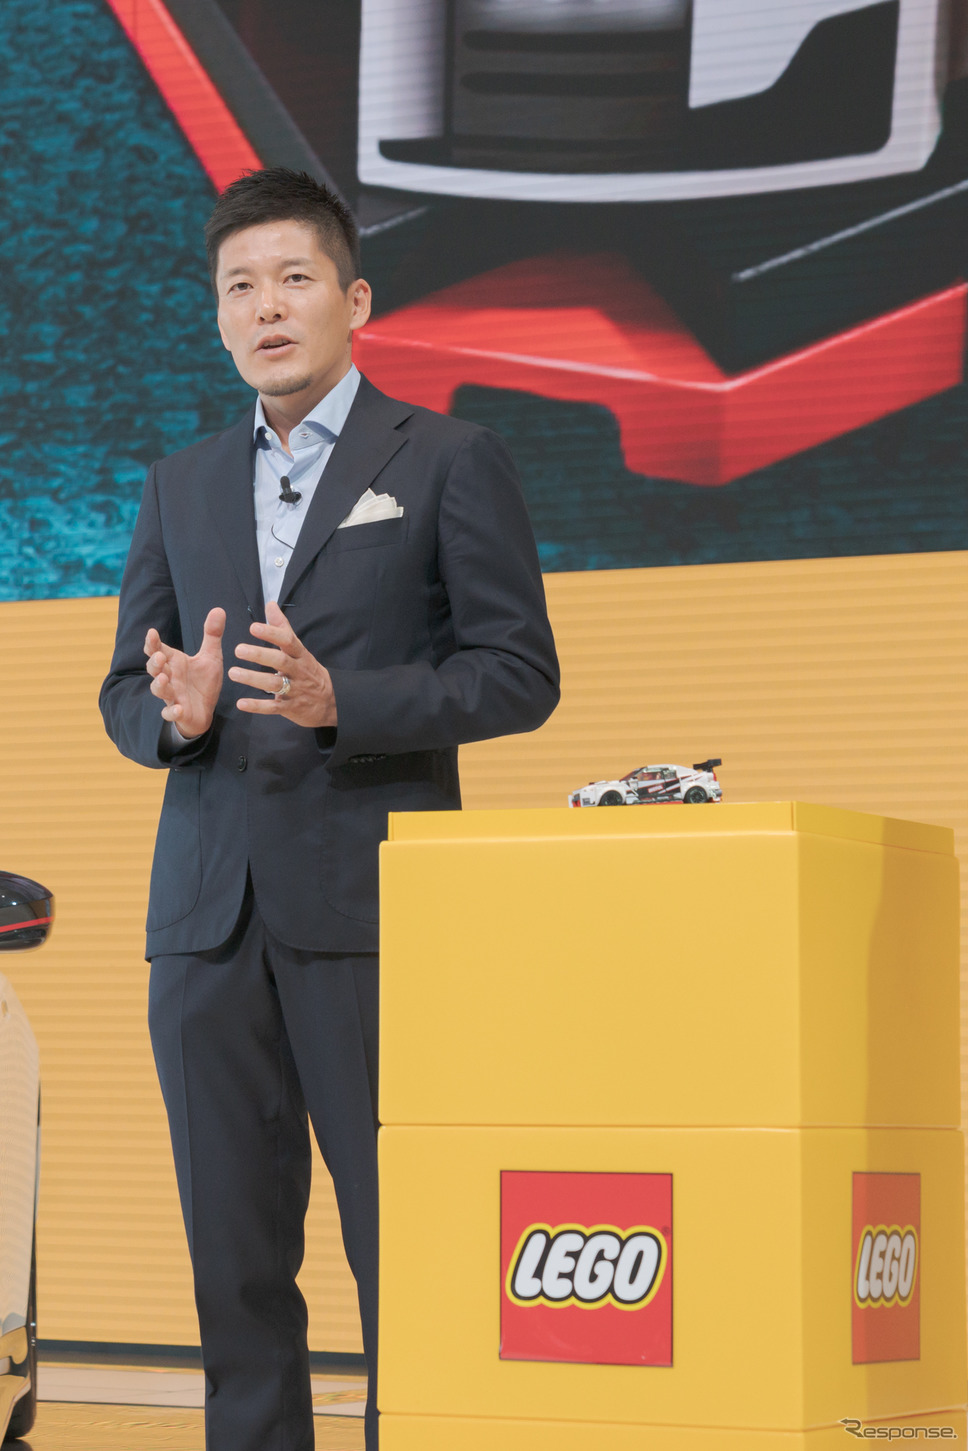 LEGO APAC Region General Manager長谷川敦氏は、子供達の憧れでもあるスーパーカーは、レゴにとって非常に大事な商品だと語った。《撮影 関口敬文》